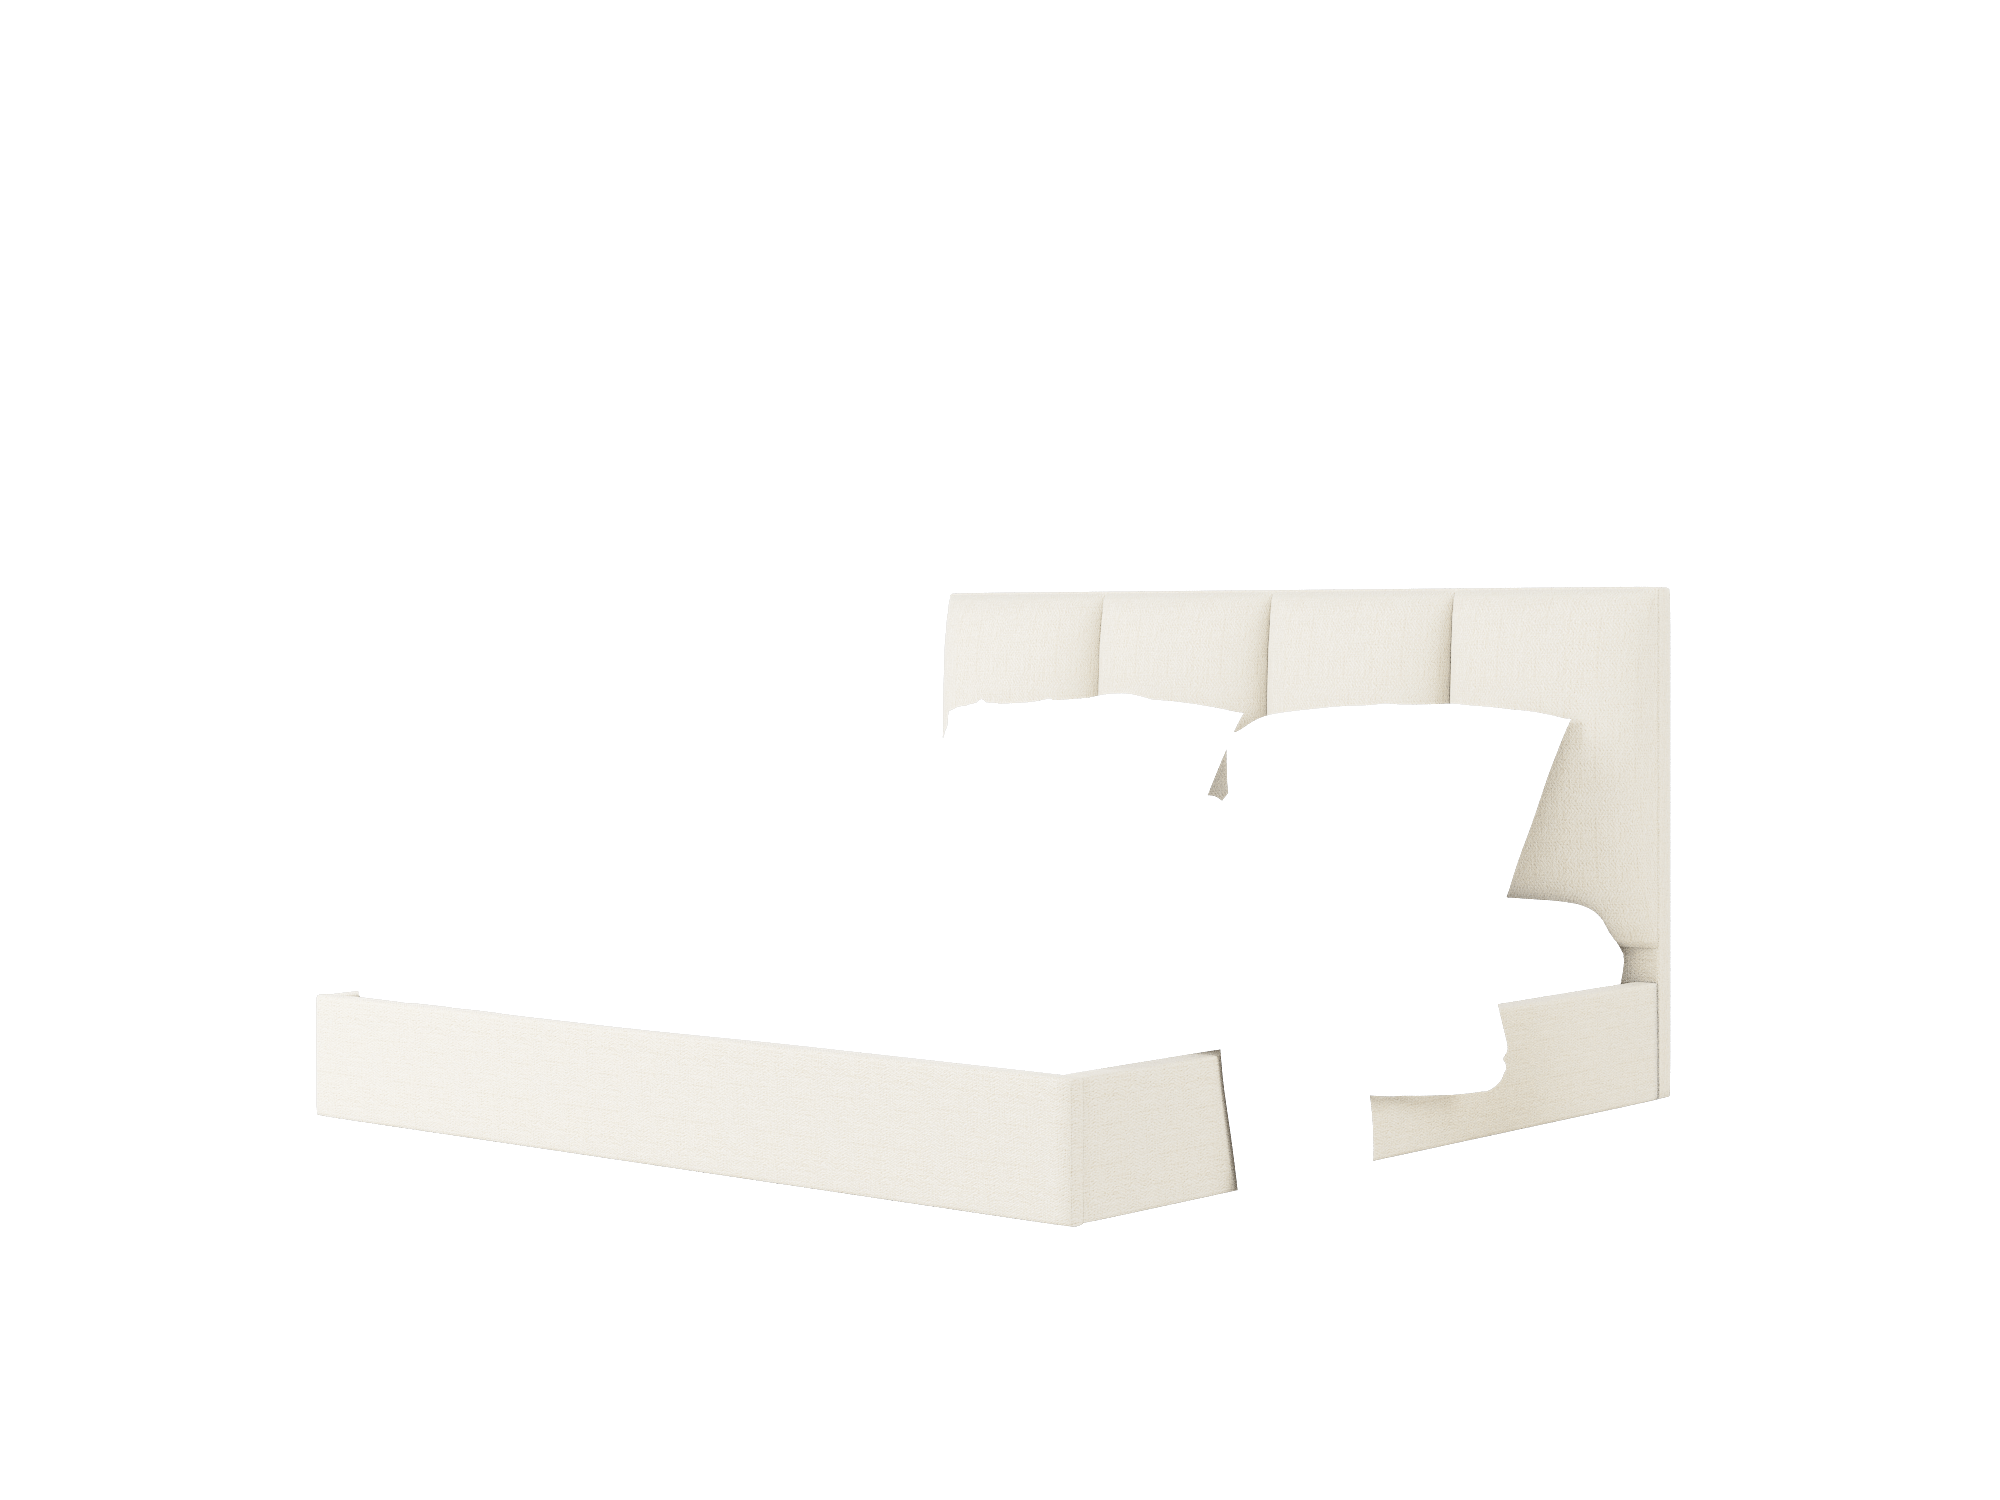 Celine Catalina Linen Bed King Room Texture